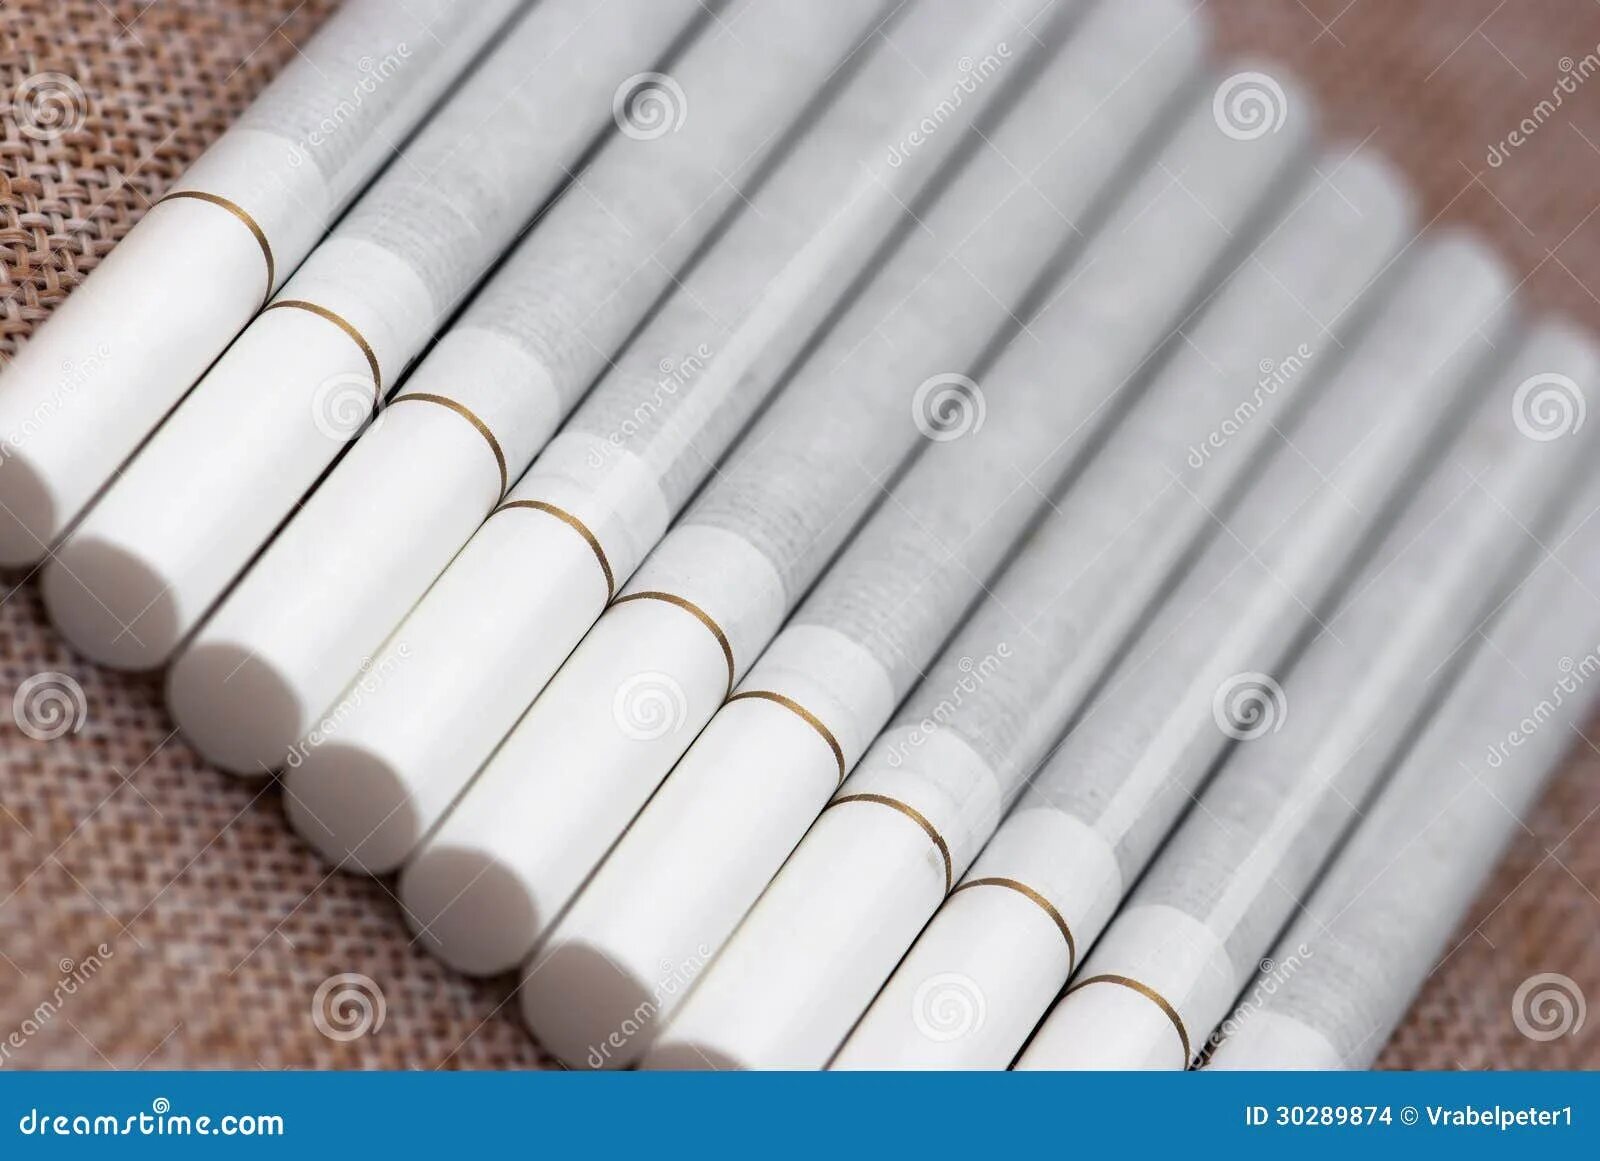 Сигареты с белым фильтром. Сигареты с золотой полоской на фильтре. Сигареты с золотой полоской. Белые сигареты с белым фильтром.